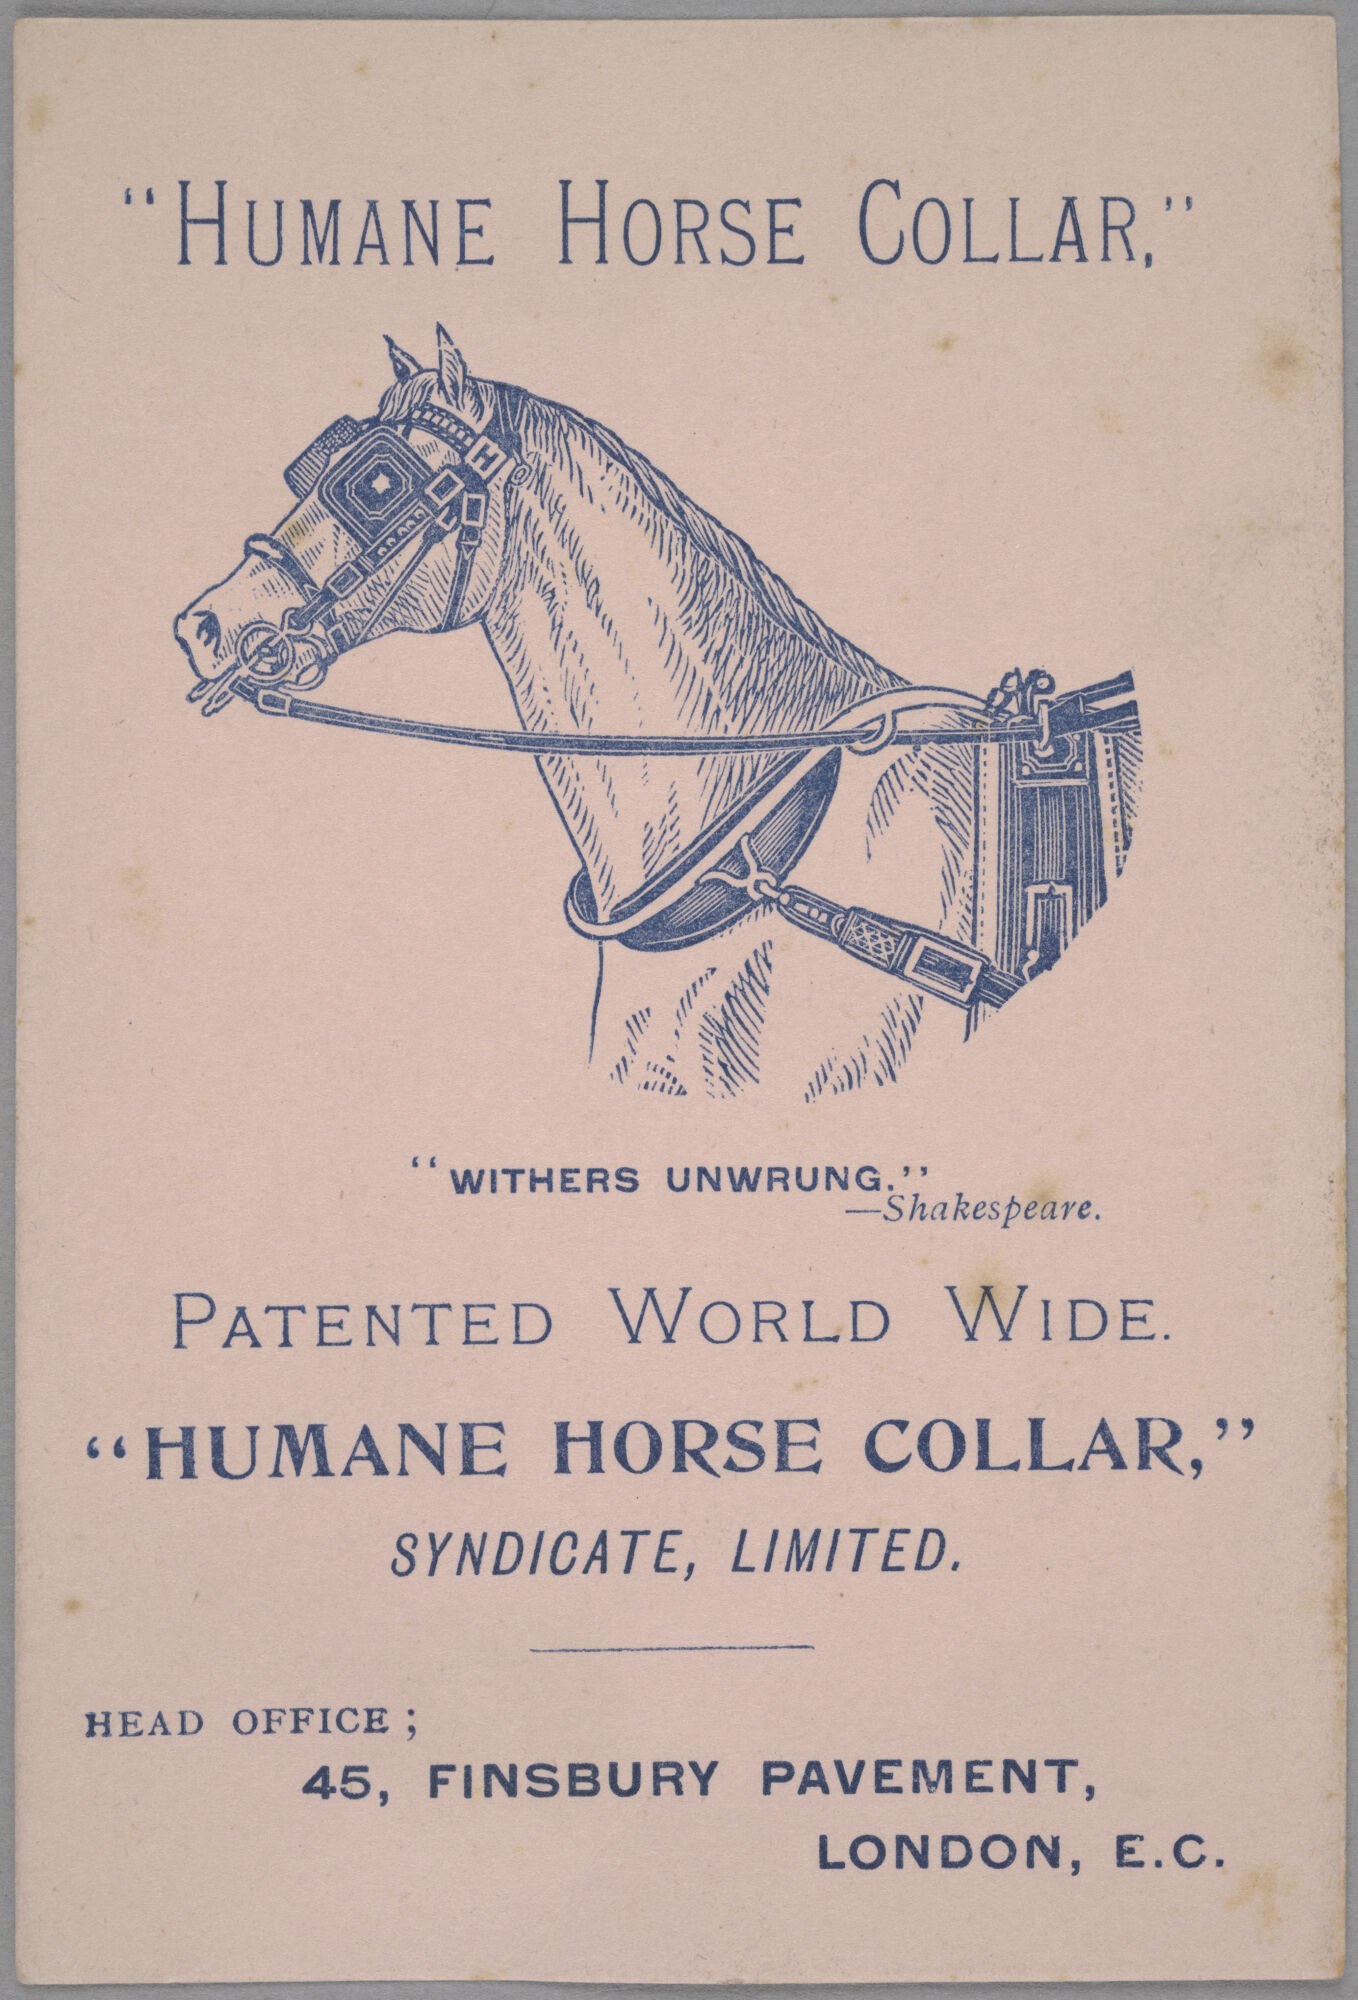 Reclamekaart voor paardentuig